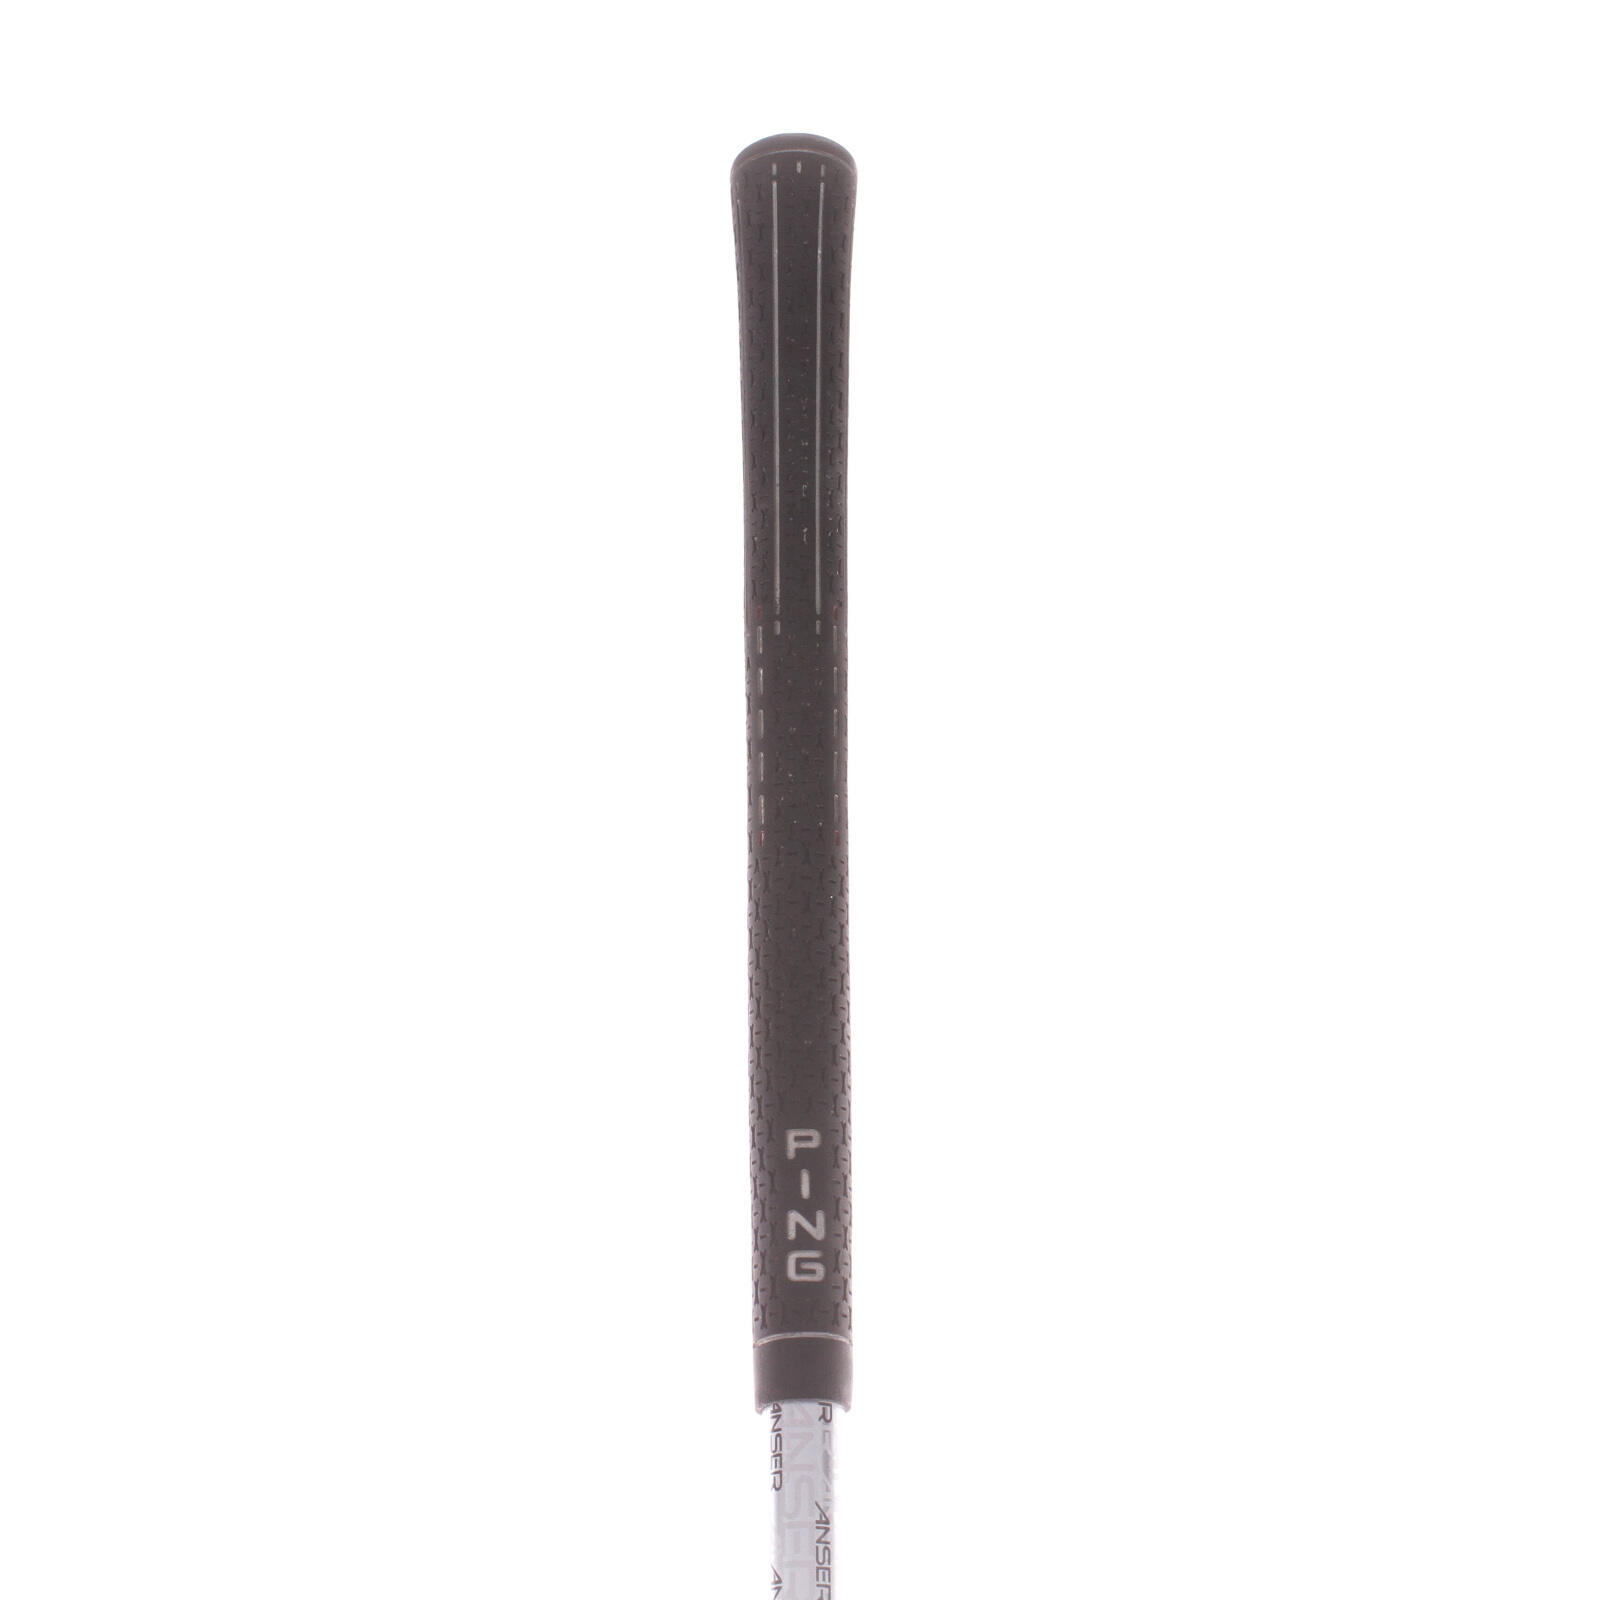 USED - Fairway 3 Wood Ping Anser 14.5 Degree Regular Flex Right Handed - GRADE B 5/5